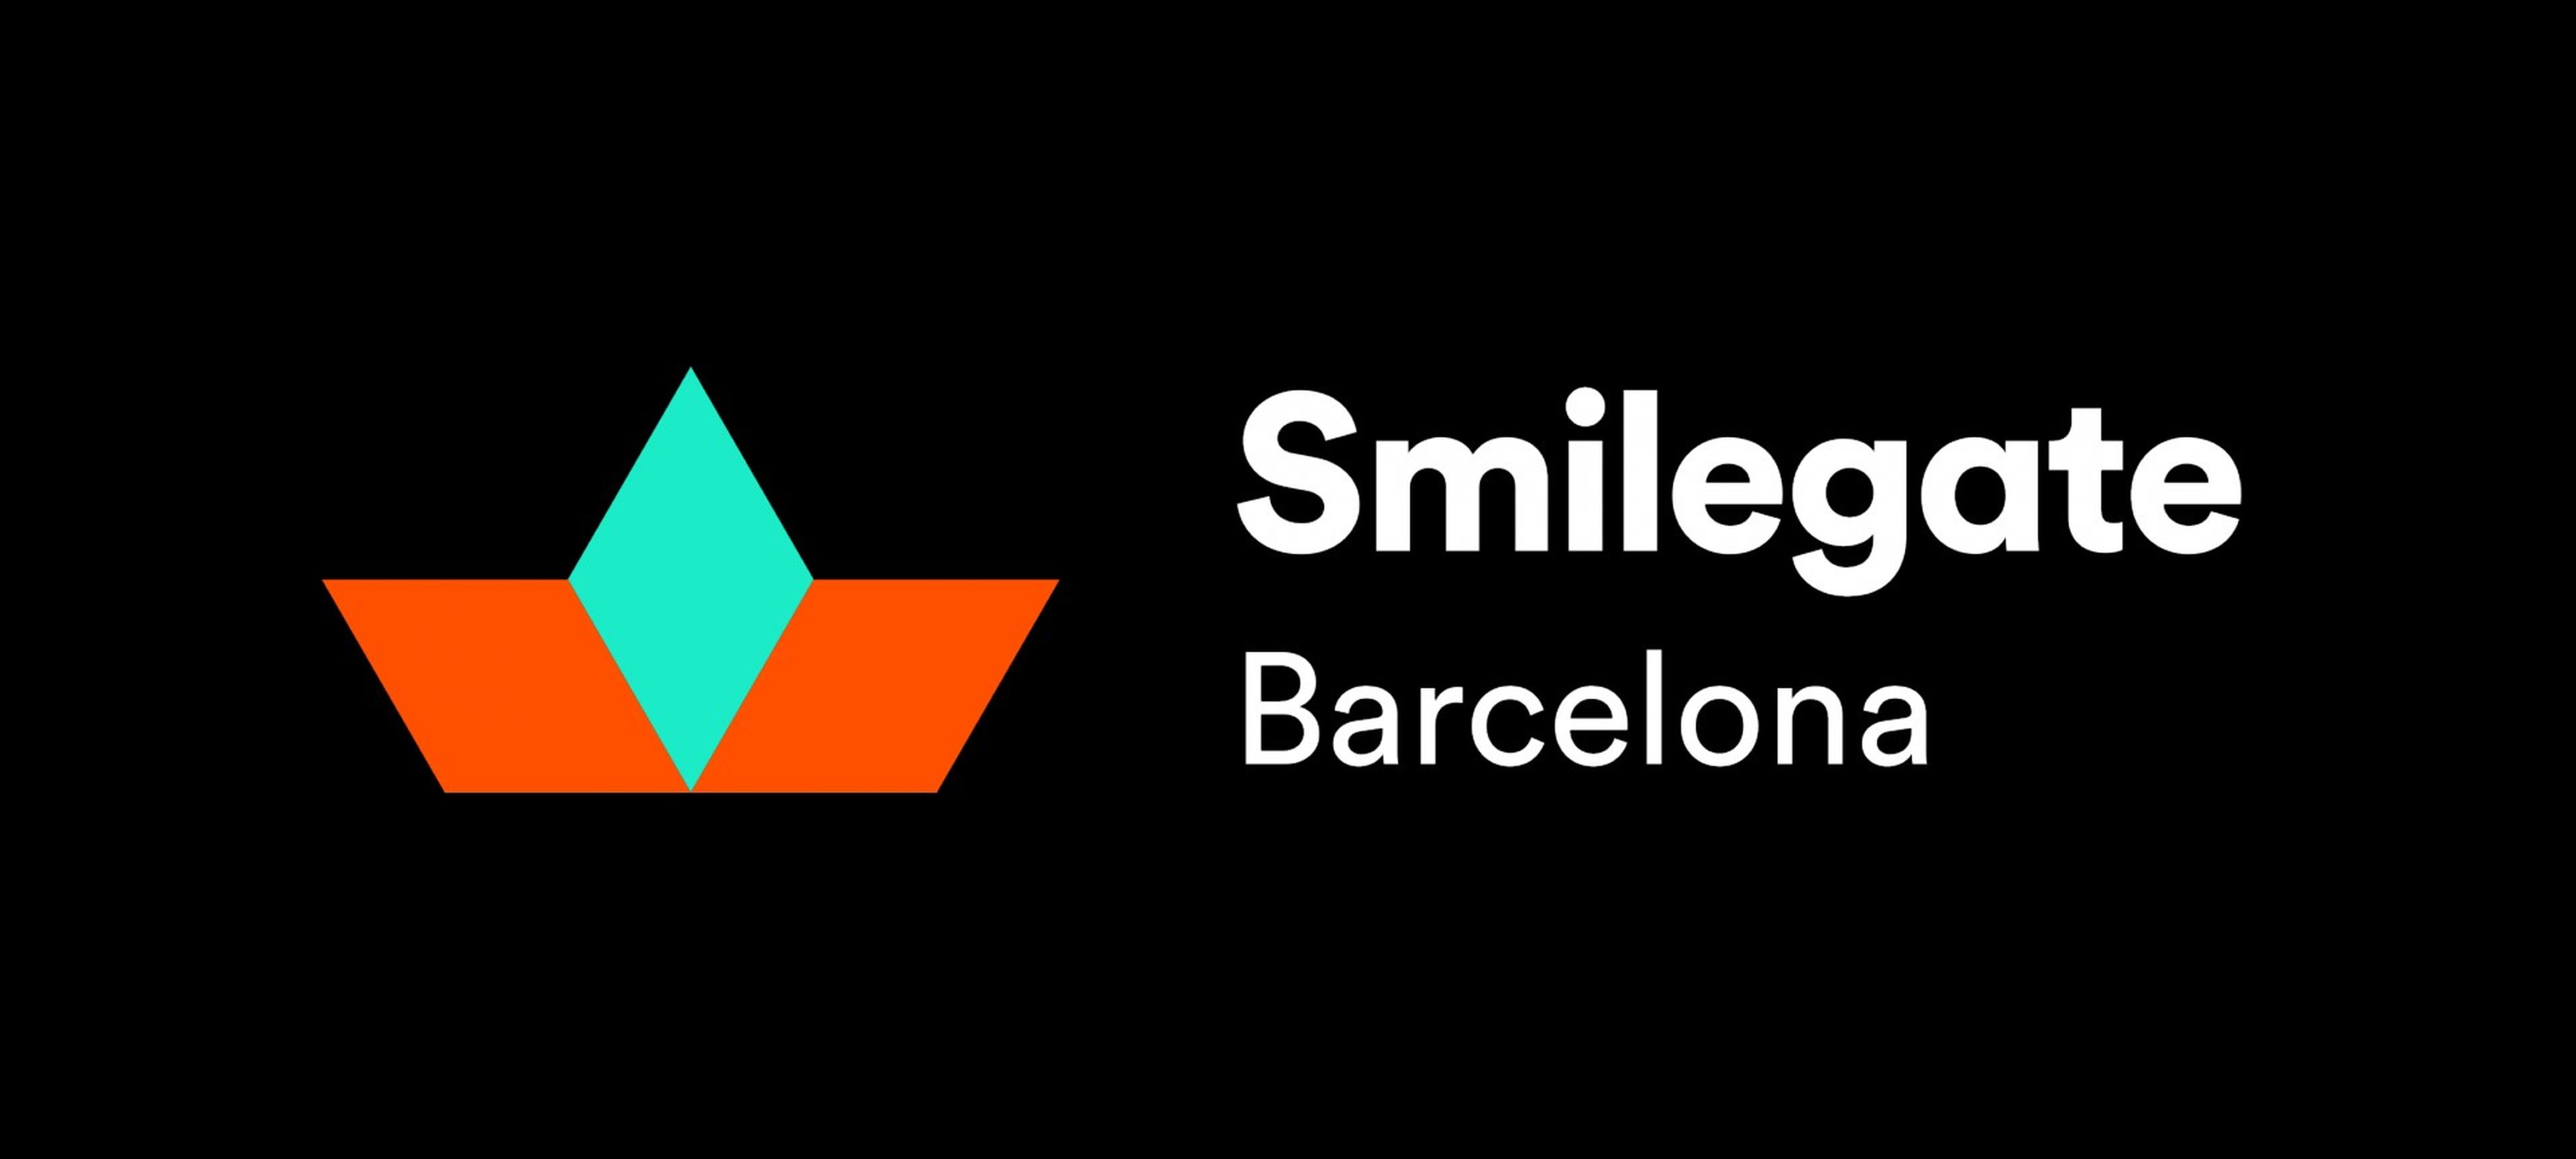 Smilegate Barcelona